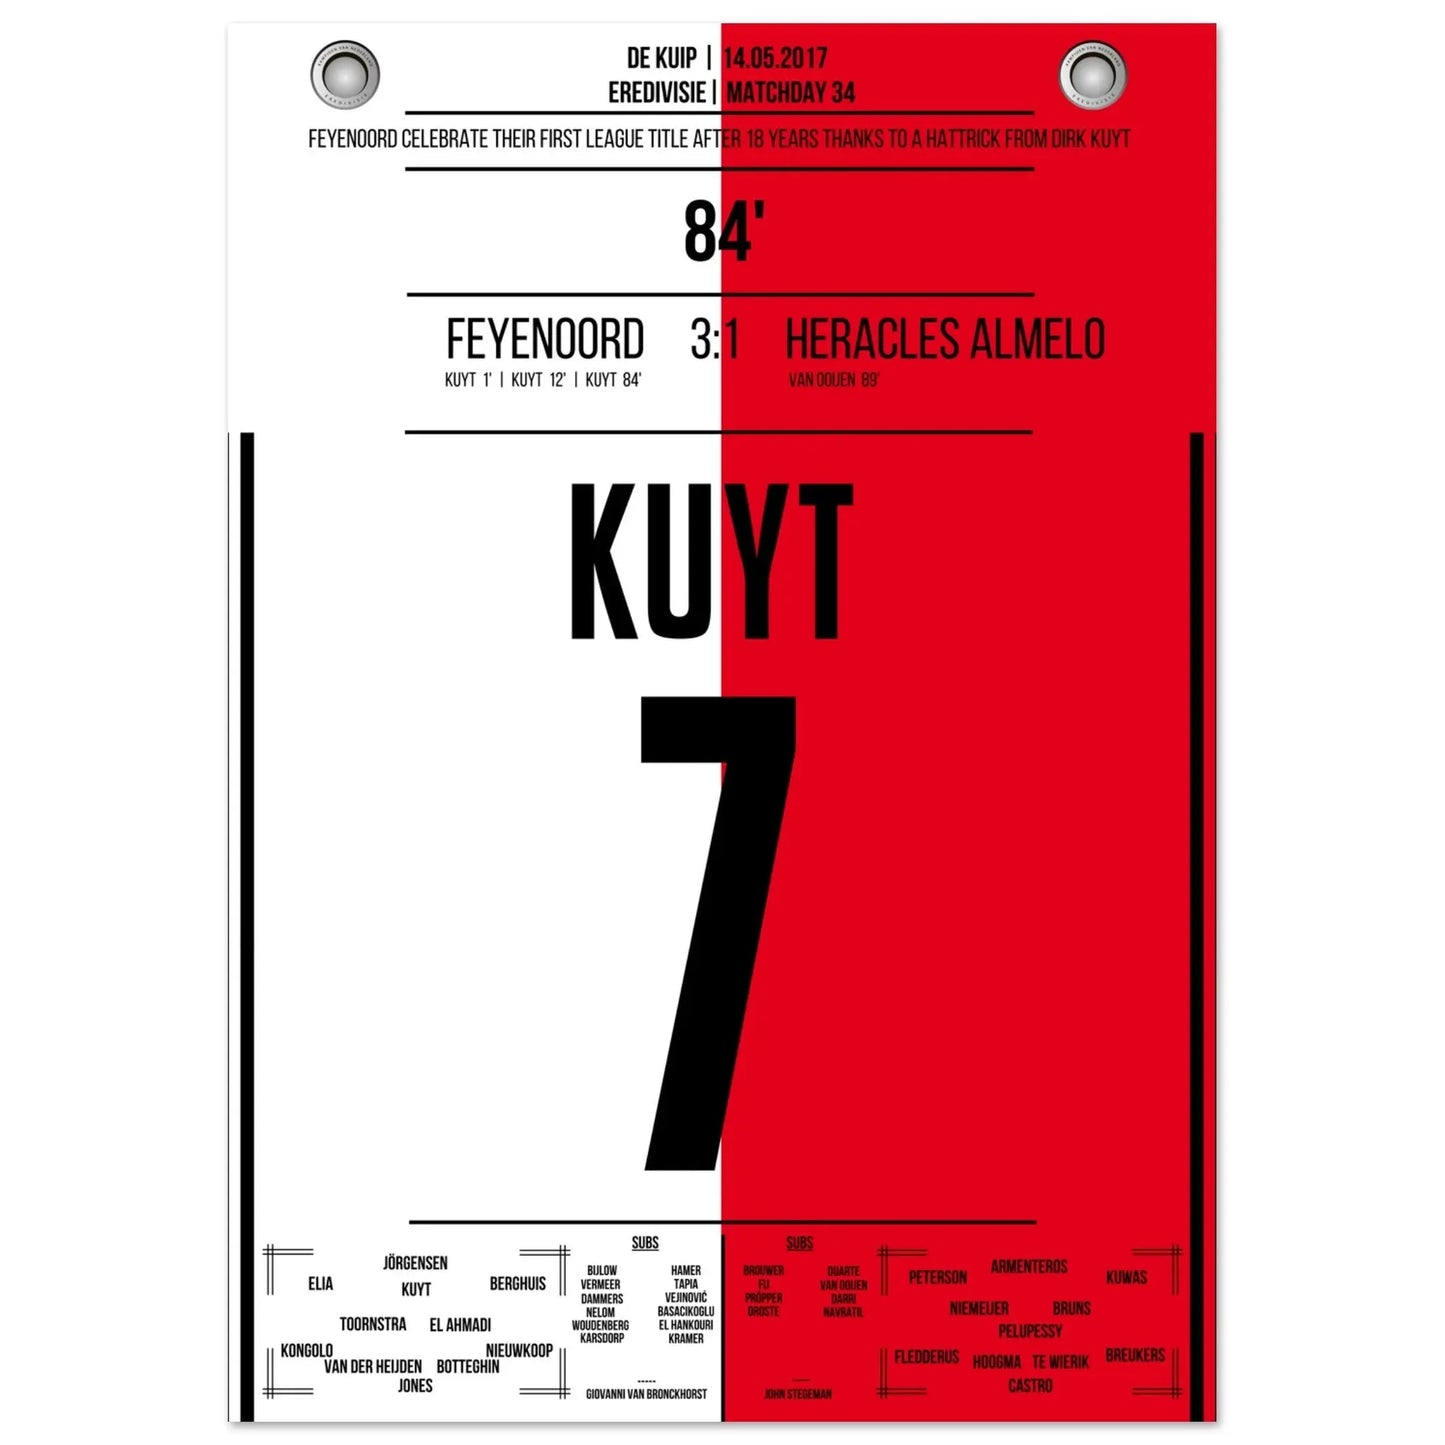 Kuyt hattrick voor Feyenoords eerste landstitel in 18 jaar